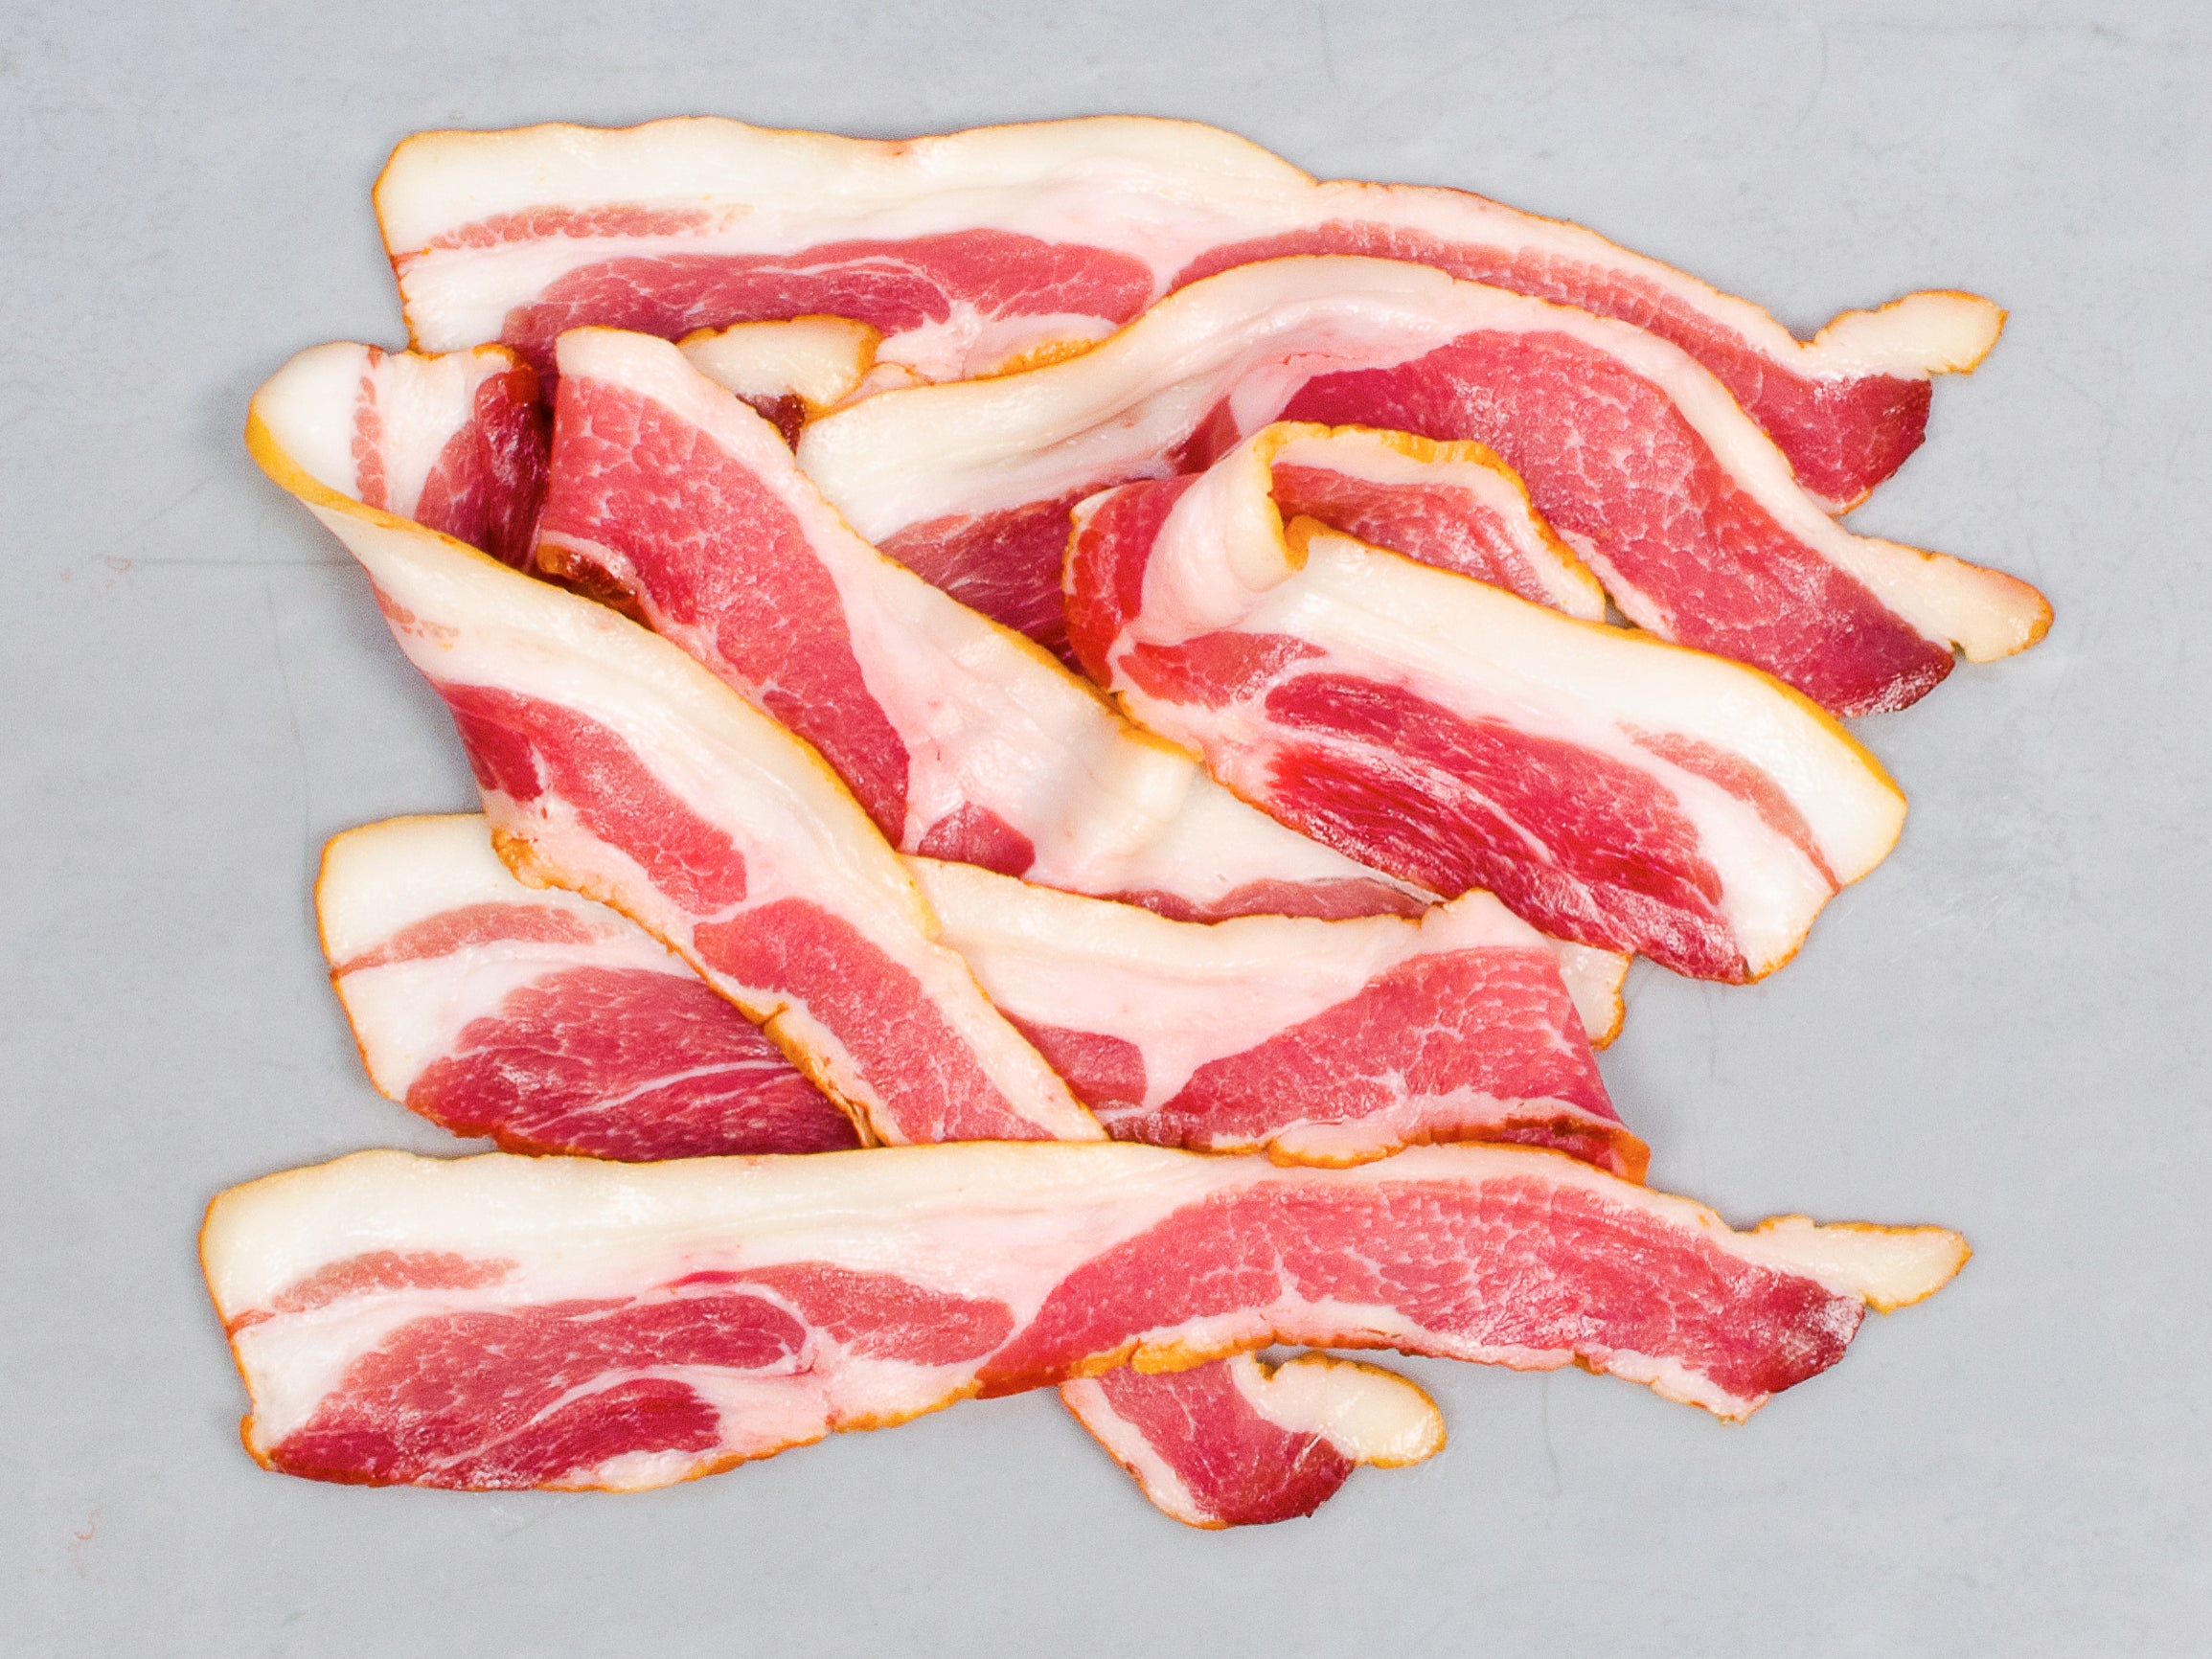 Broadbent Applewood Smoked Heritage Bacon